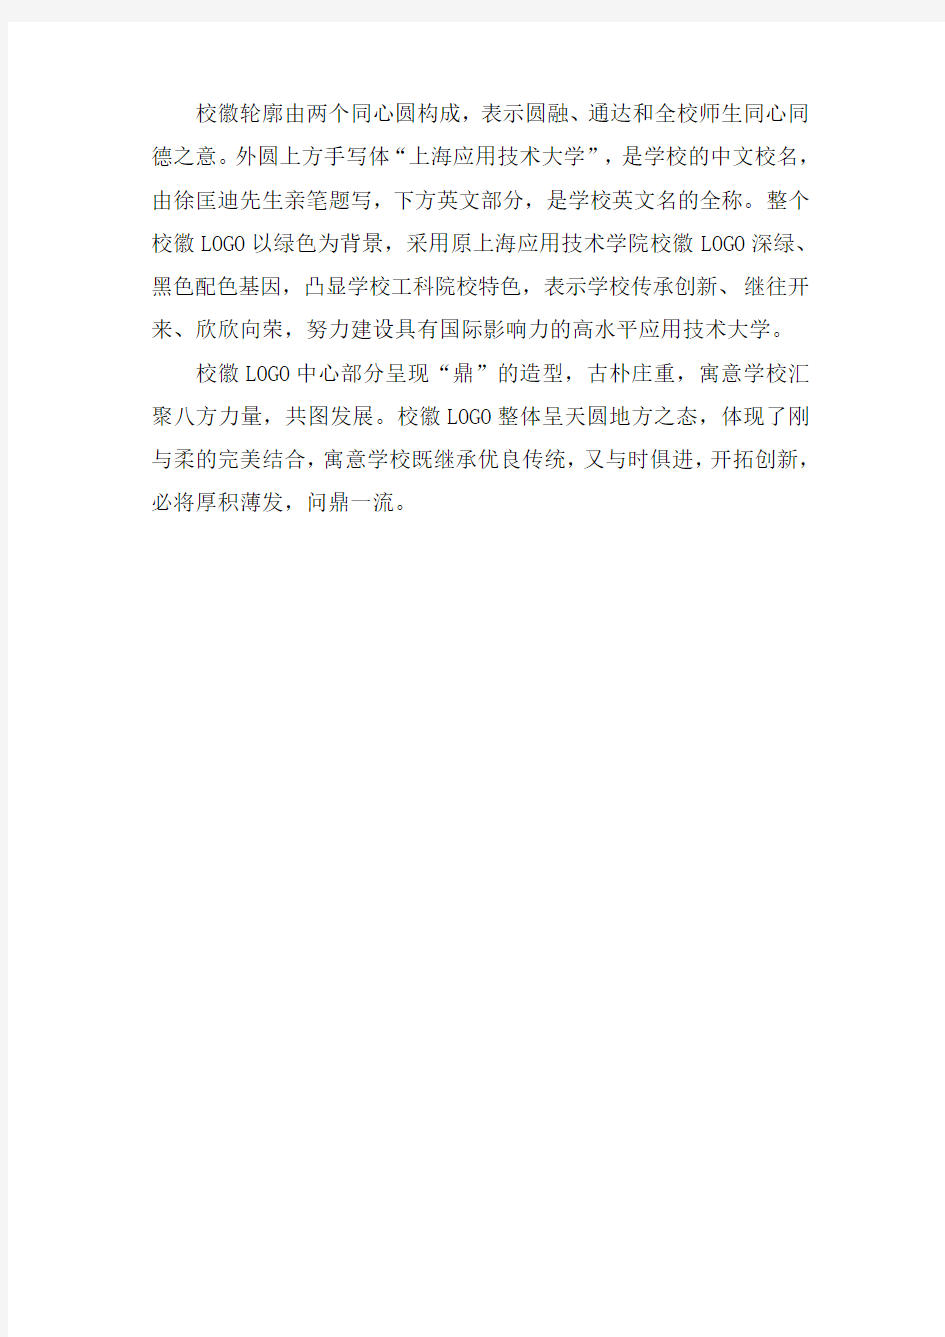 上海应用技术大学校徽(LOGO)释义